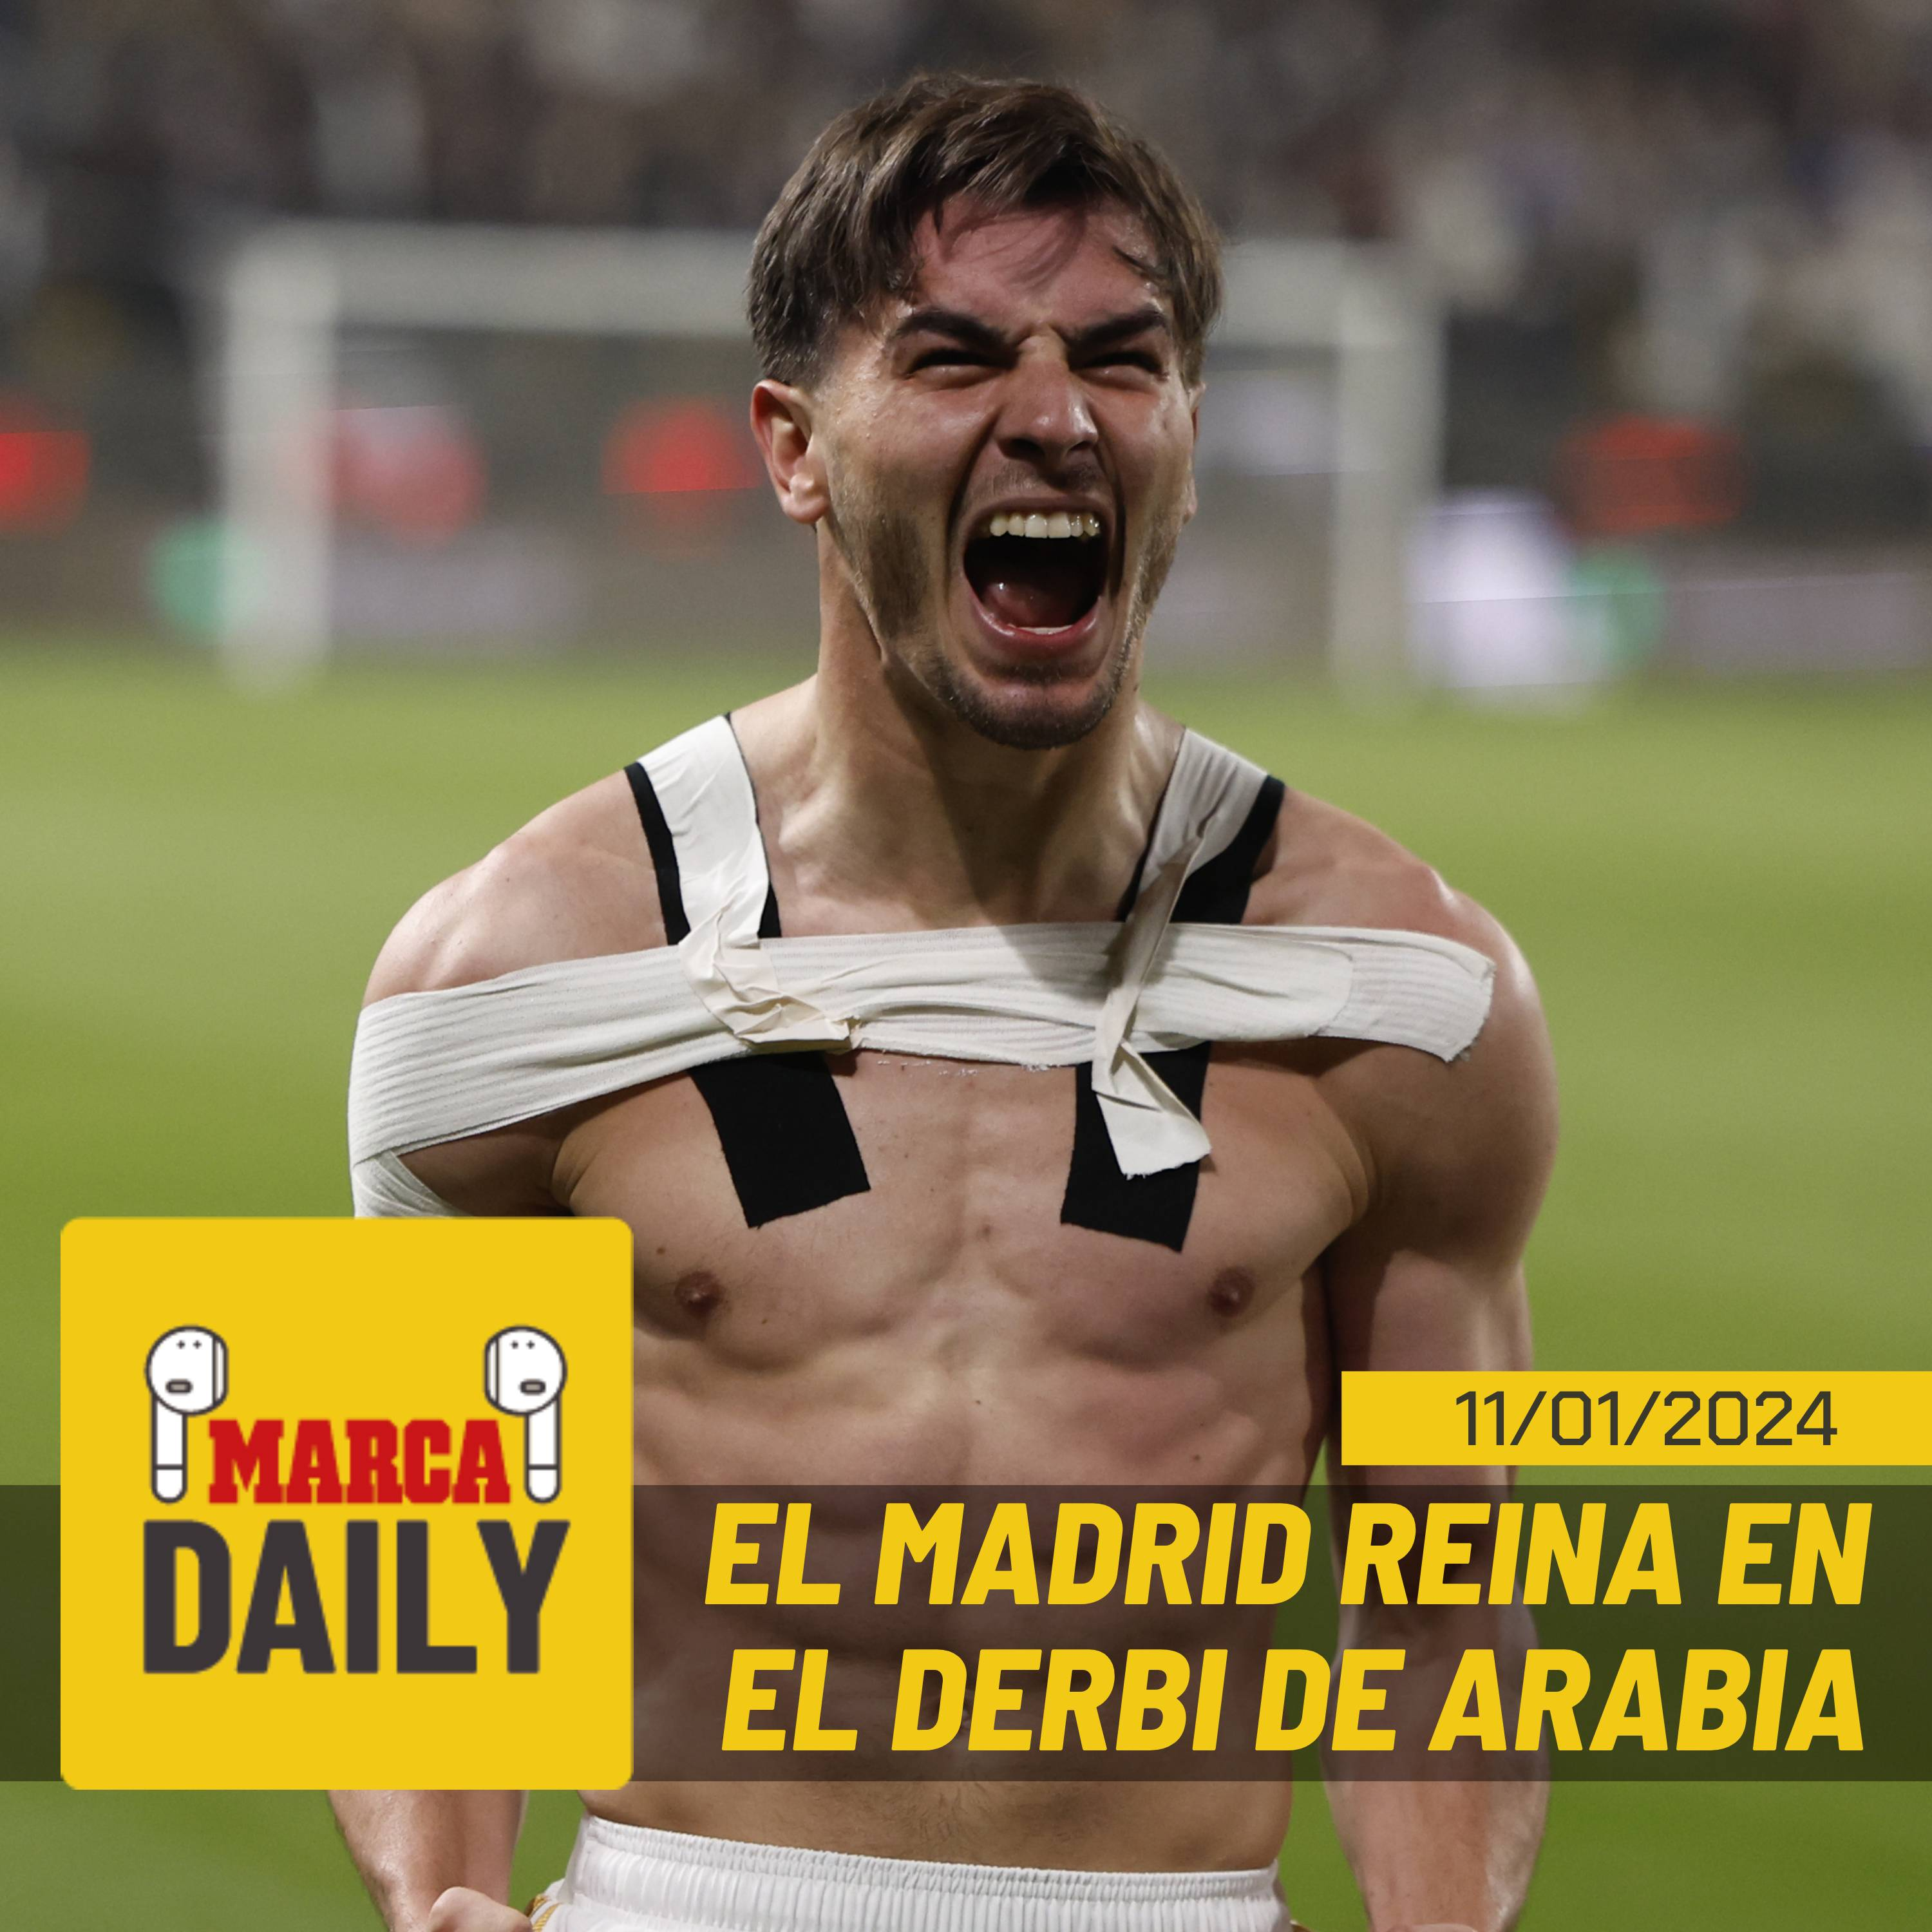 El Real Madrid reina en el derbi de Arabia